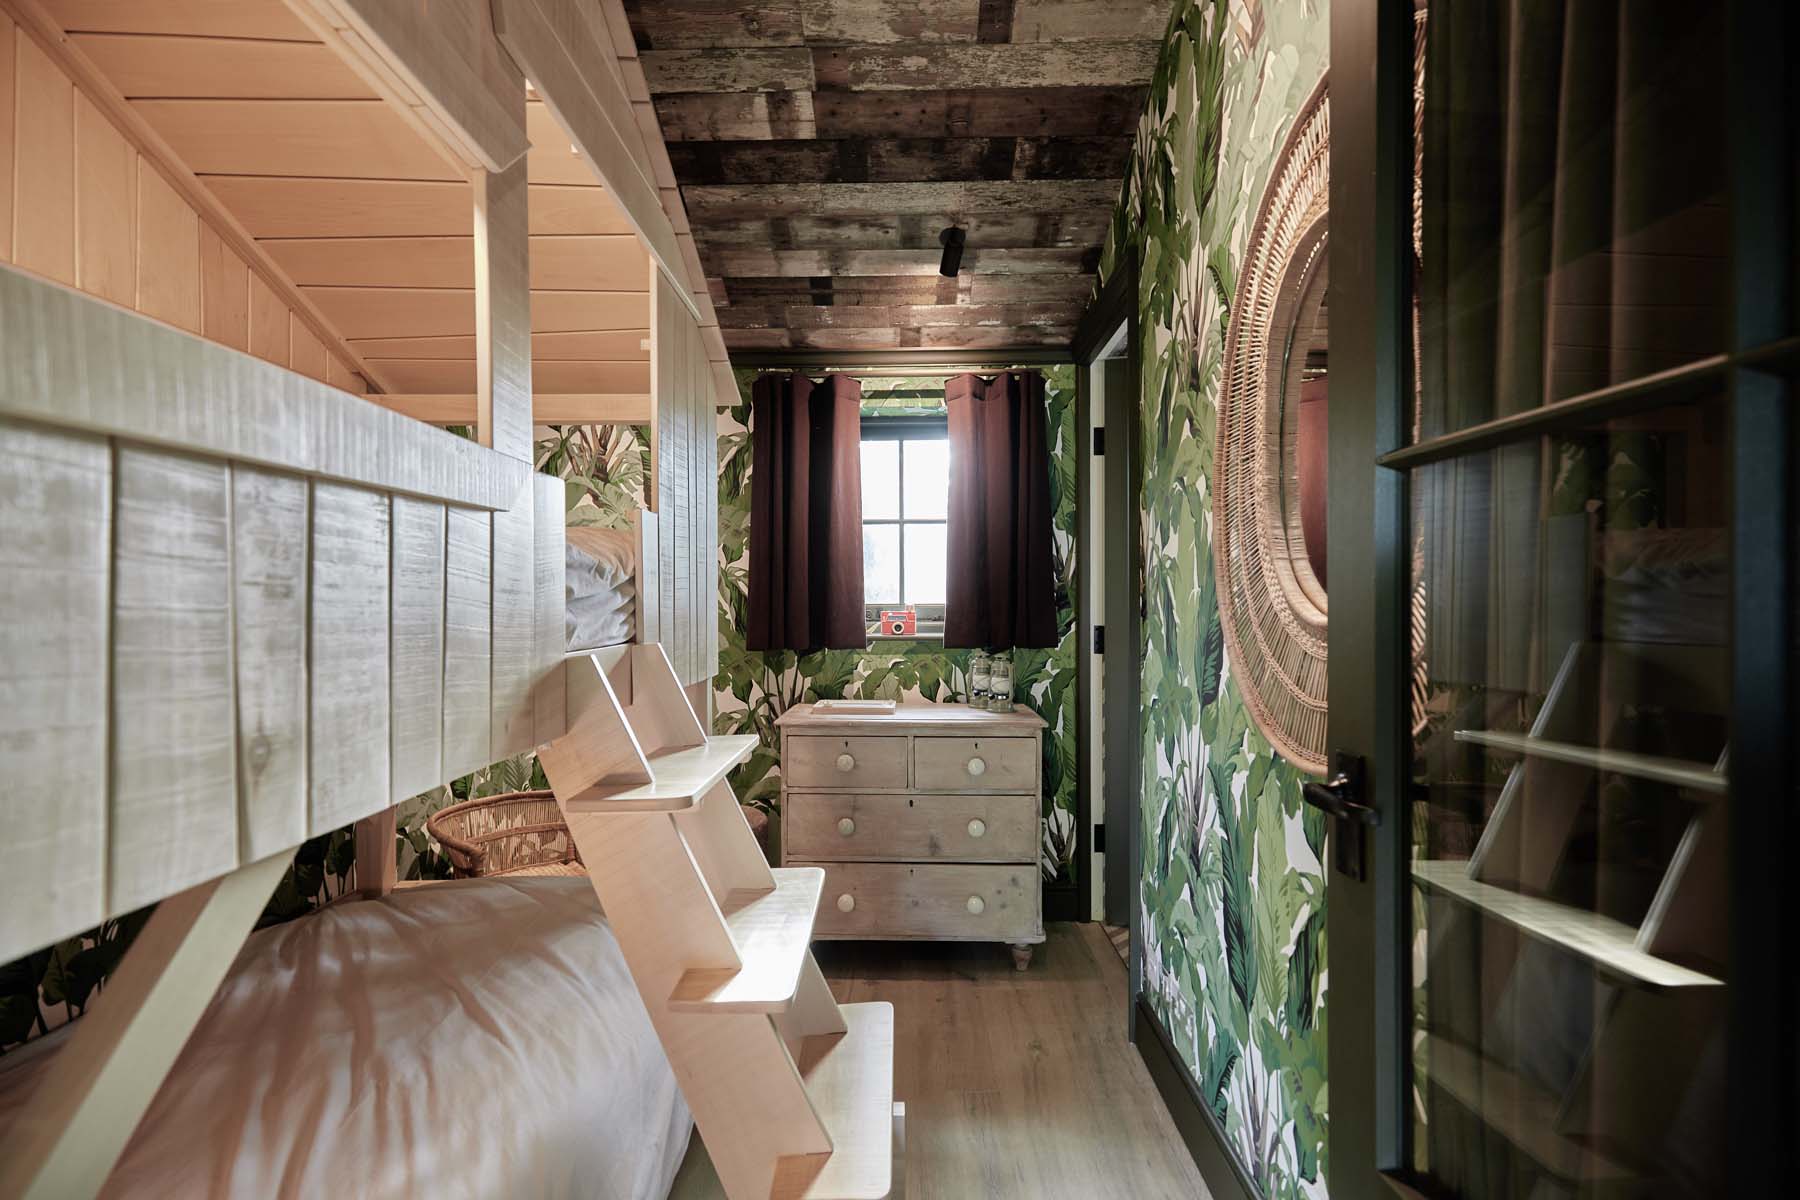 wooden bunk beds and bedroom window